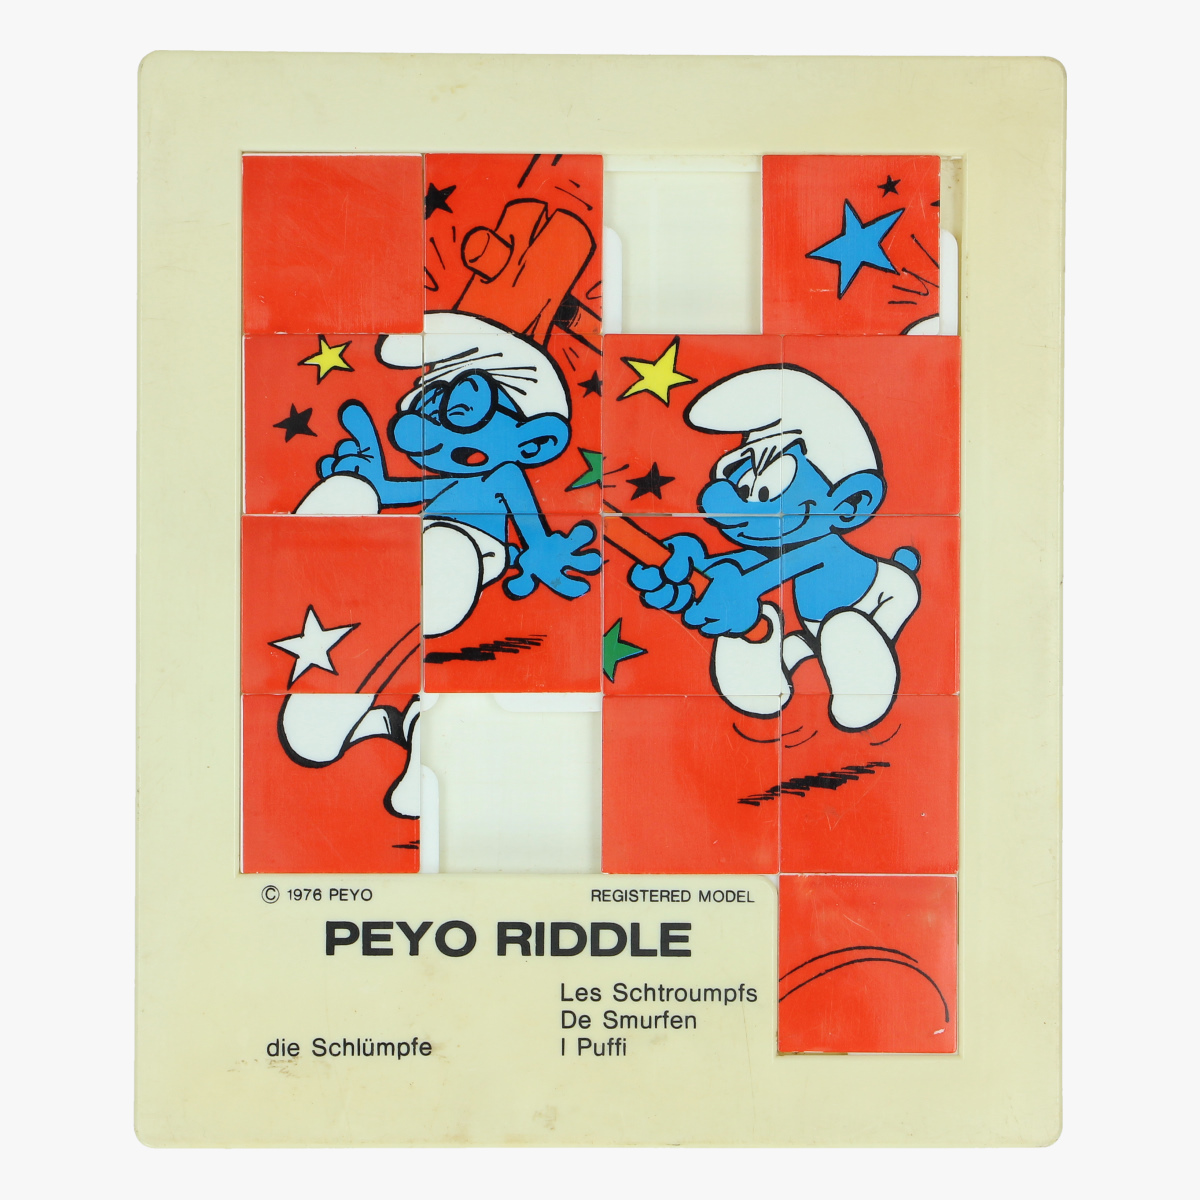 Afbeeldingen van de smurfen peyo riddle 1976 made in belgium 